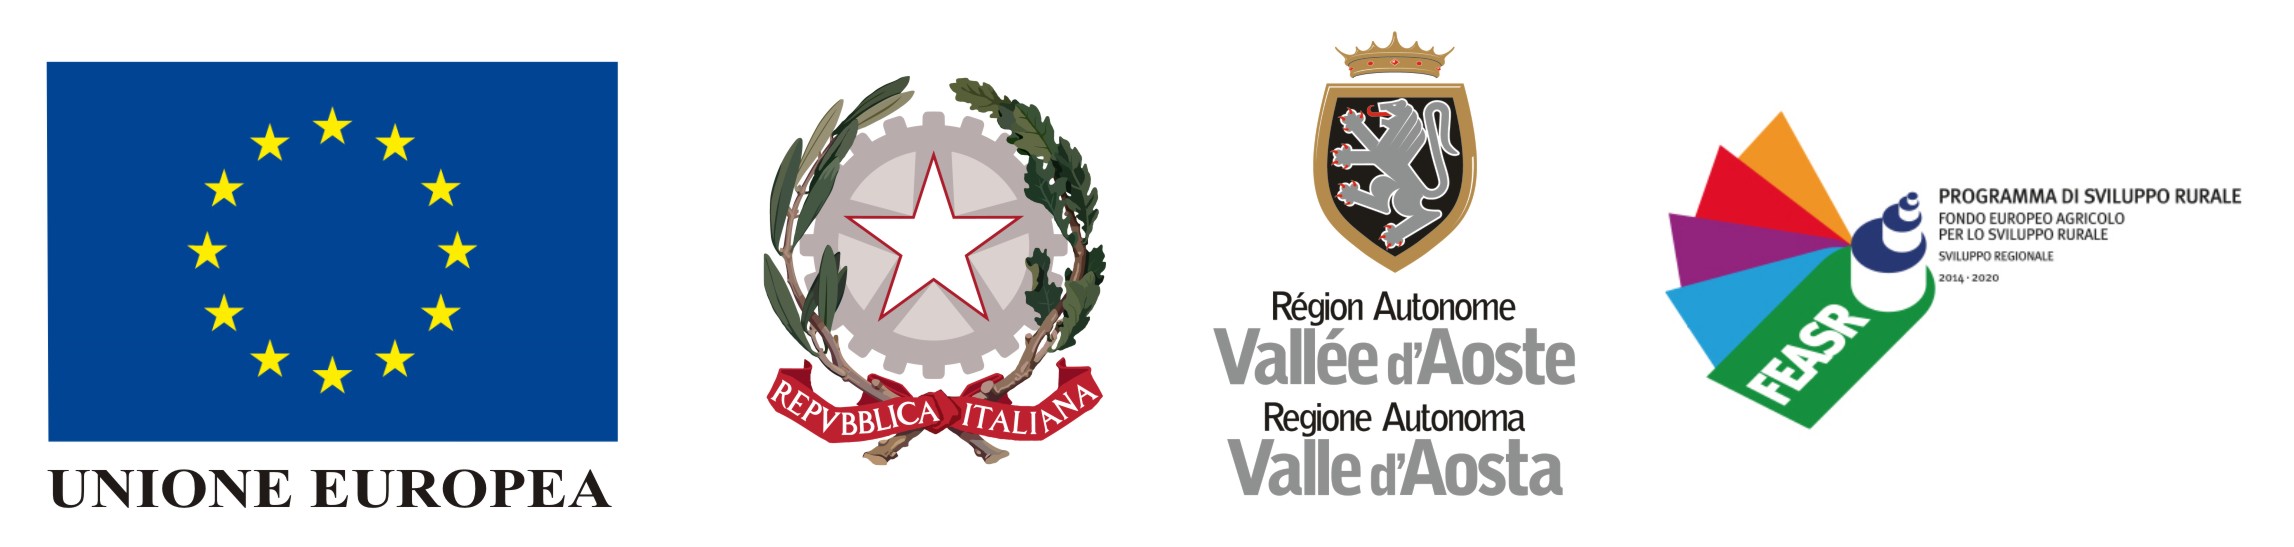 Loghi Programma di sviluppo rurale 2014/22 (Unione Europea - Repubblica Italiana - Regione Autonoma Valle d'Aosta - FEASR) 